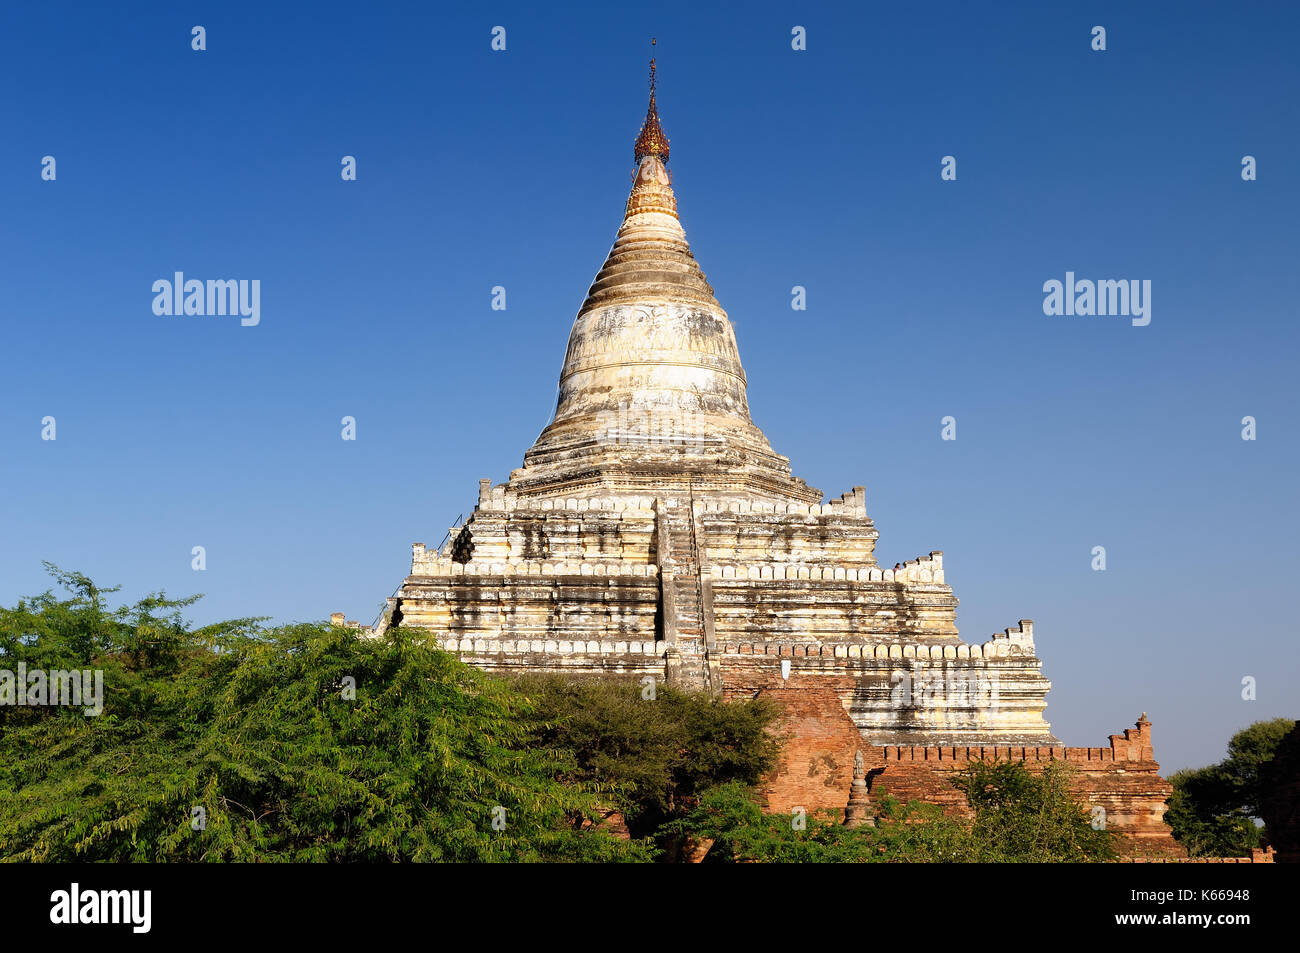 Bagan,Shwesandaw Paya temple, le plus important temple de Bagan, myanmar Banque D'Images